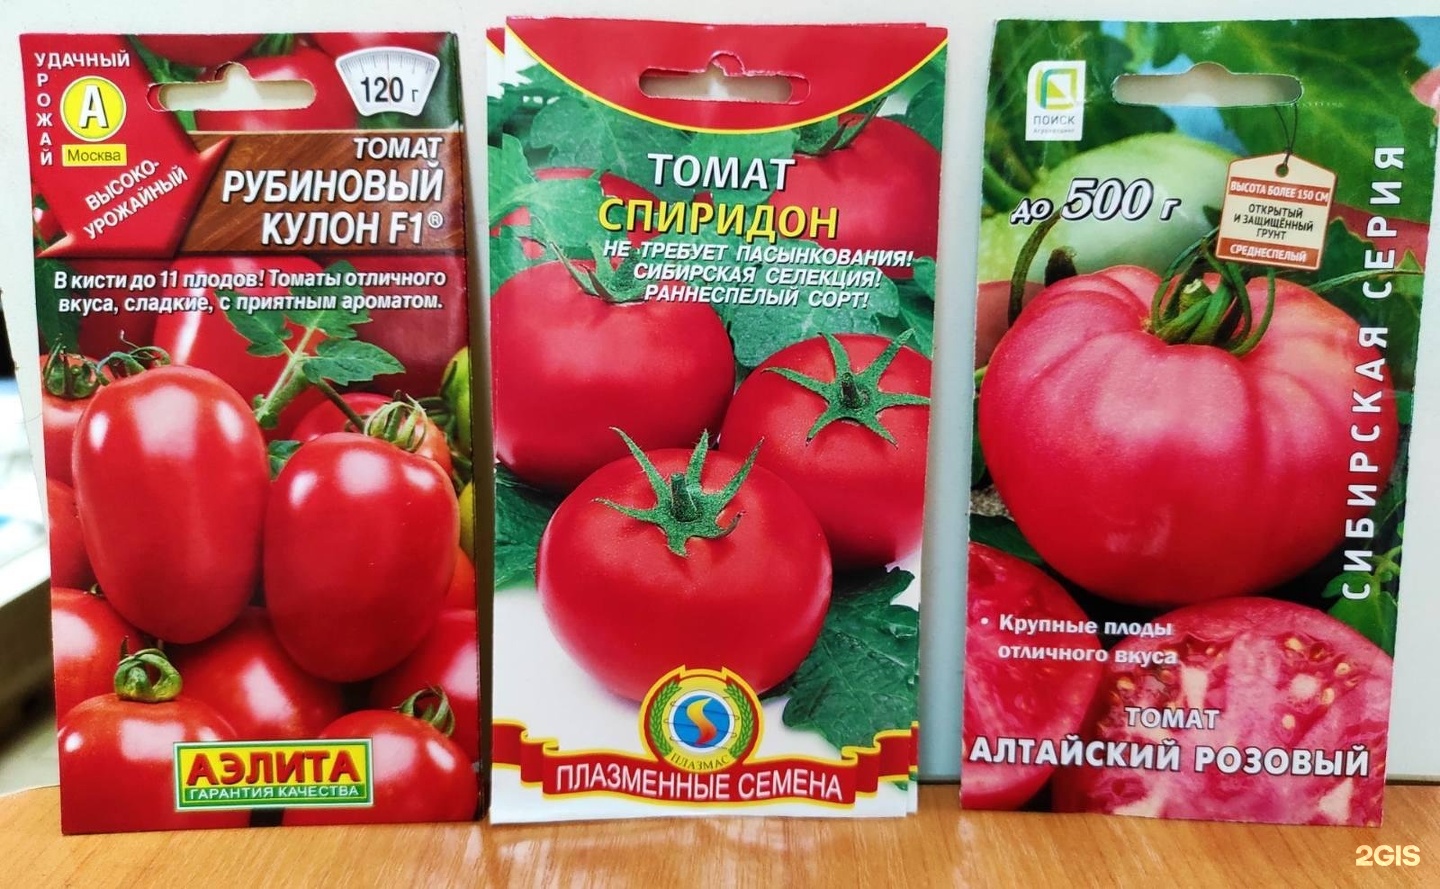 Семена томат Вельможа плазменные семена